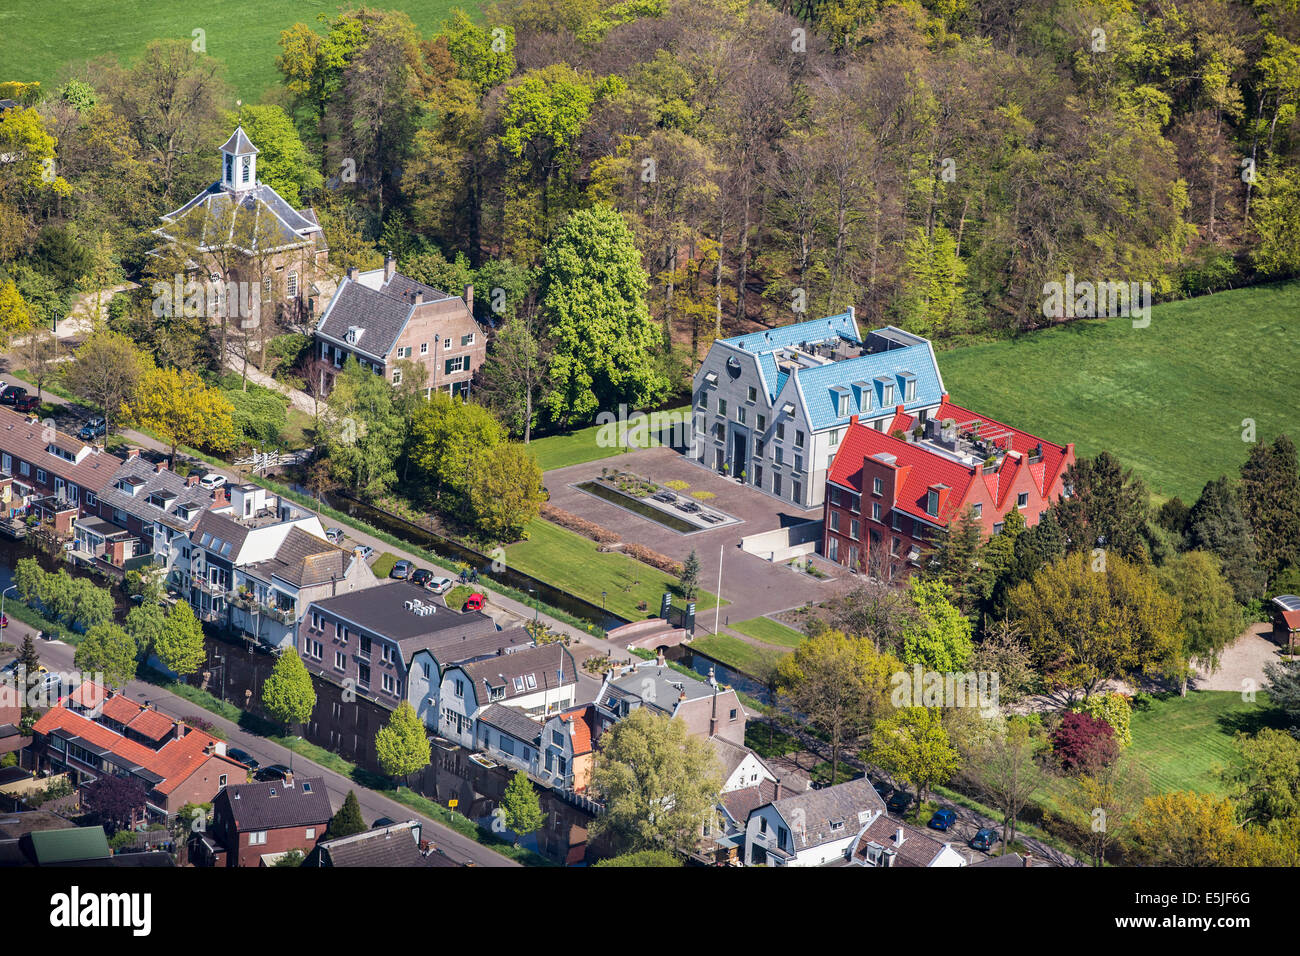 Niederlande,'s-Graveland, rechts moderne Landgut namens Castor und Pollux. Linken Niederländisch Reformierte Kirche von 1658. Luftbild Stockfoto